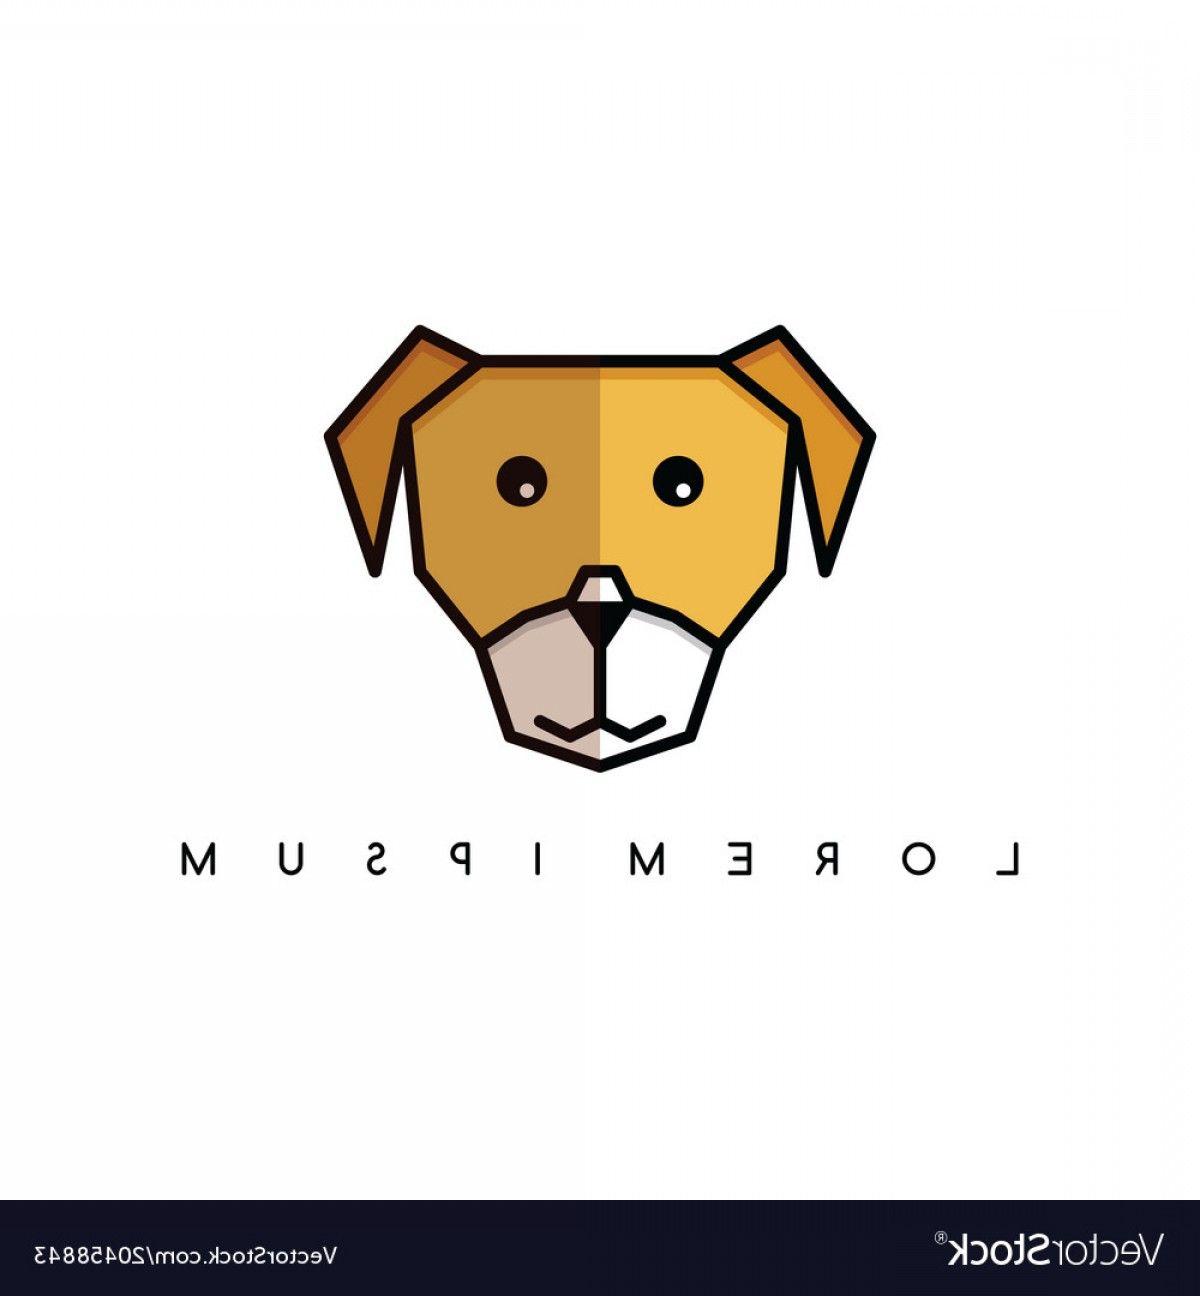 Cute Paw Print Logo - Cute Dog Puppy Animal Head Logo Theme Vector | SHOPATCLOTH